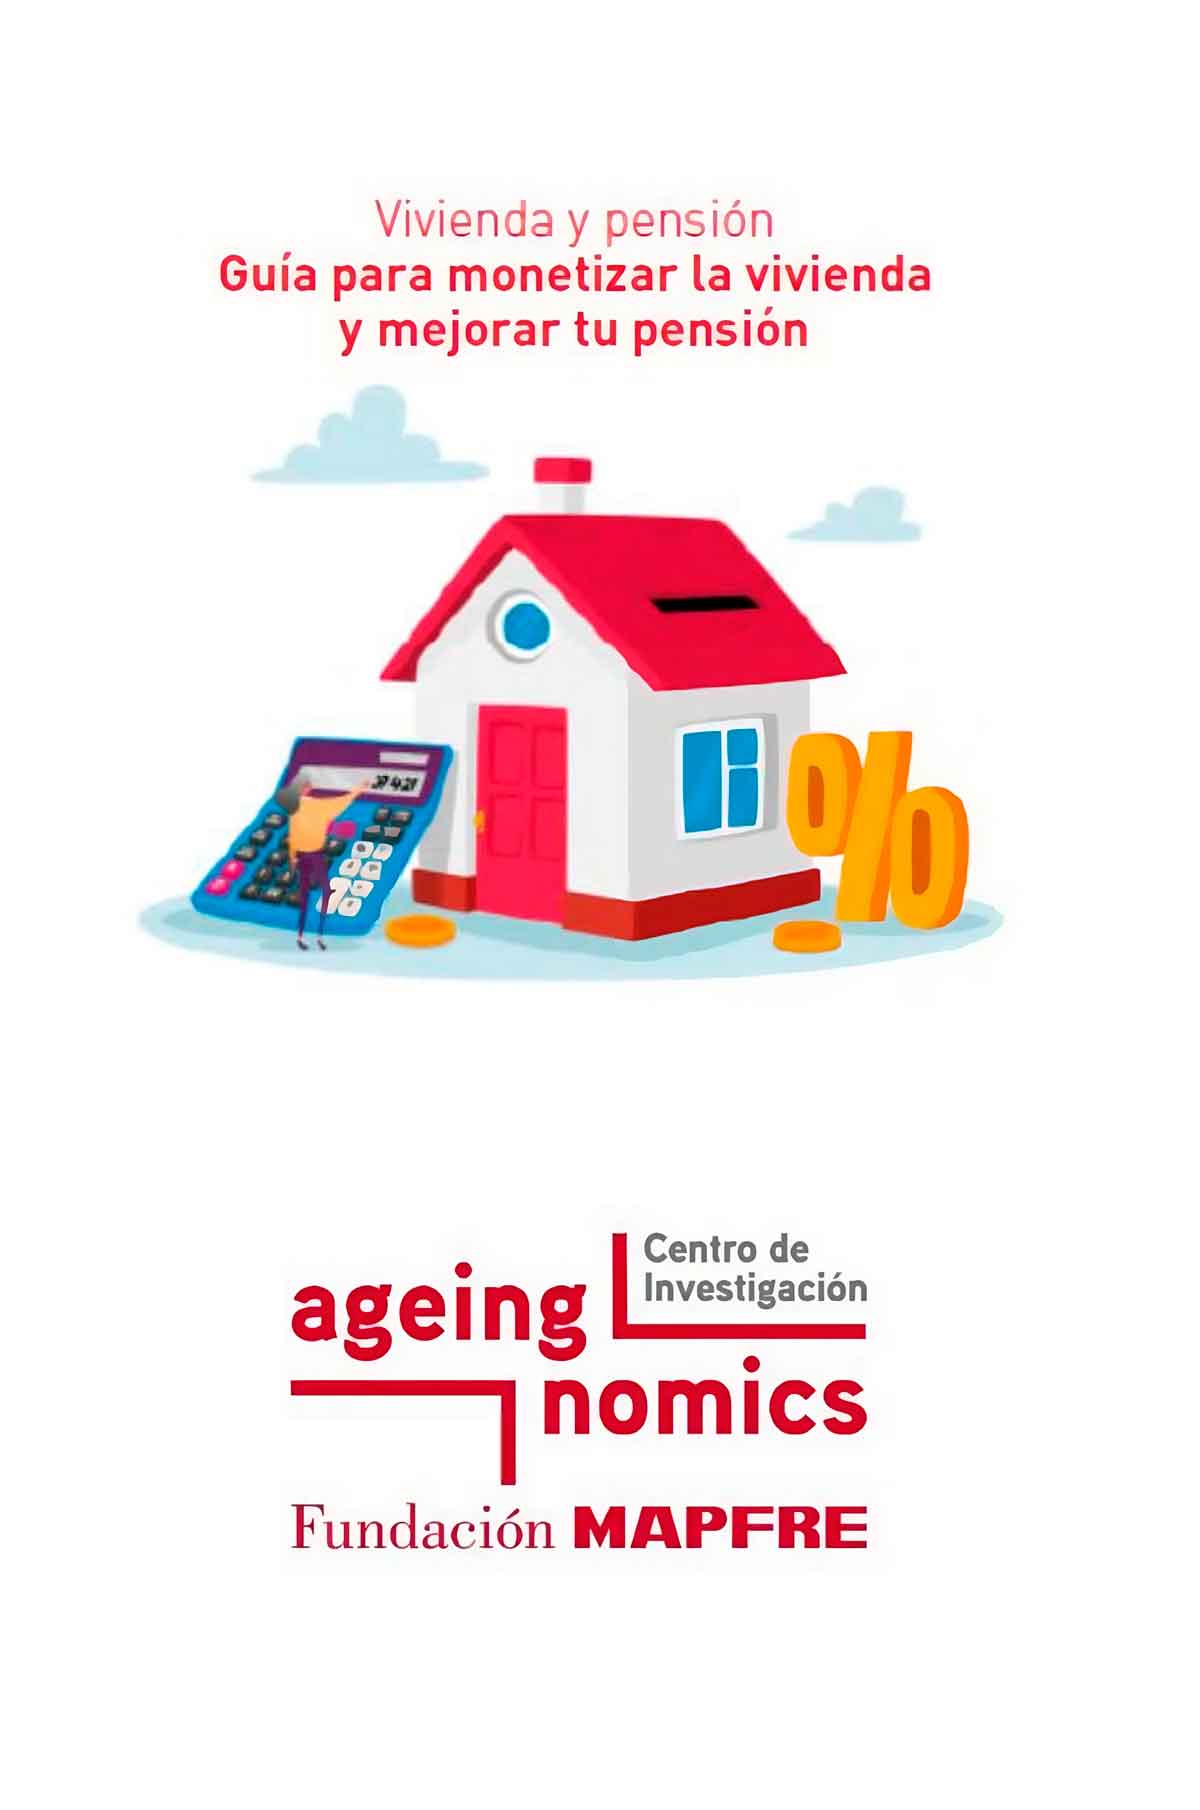 Fundación-MAPFRE-presenta-una-guía-para-monetizar-la-vivienda-a-los-mayores-de-55-años